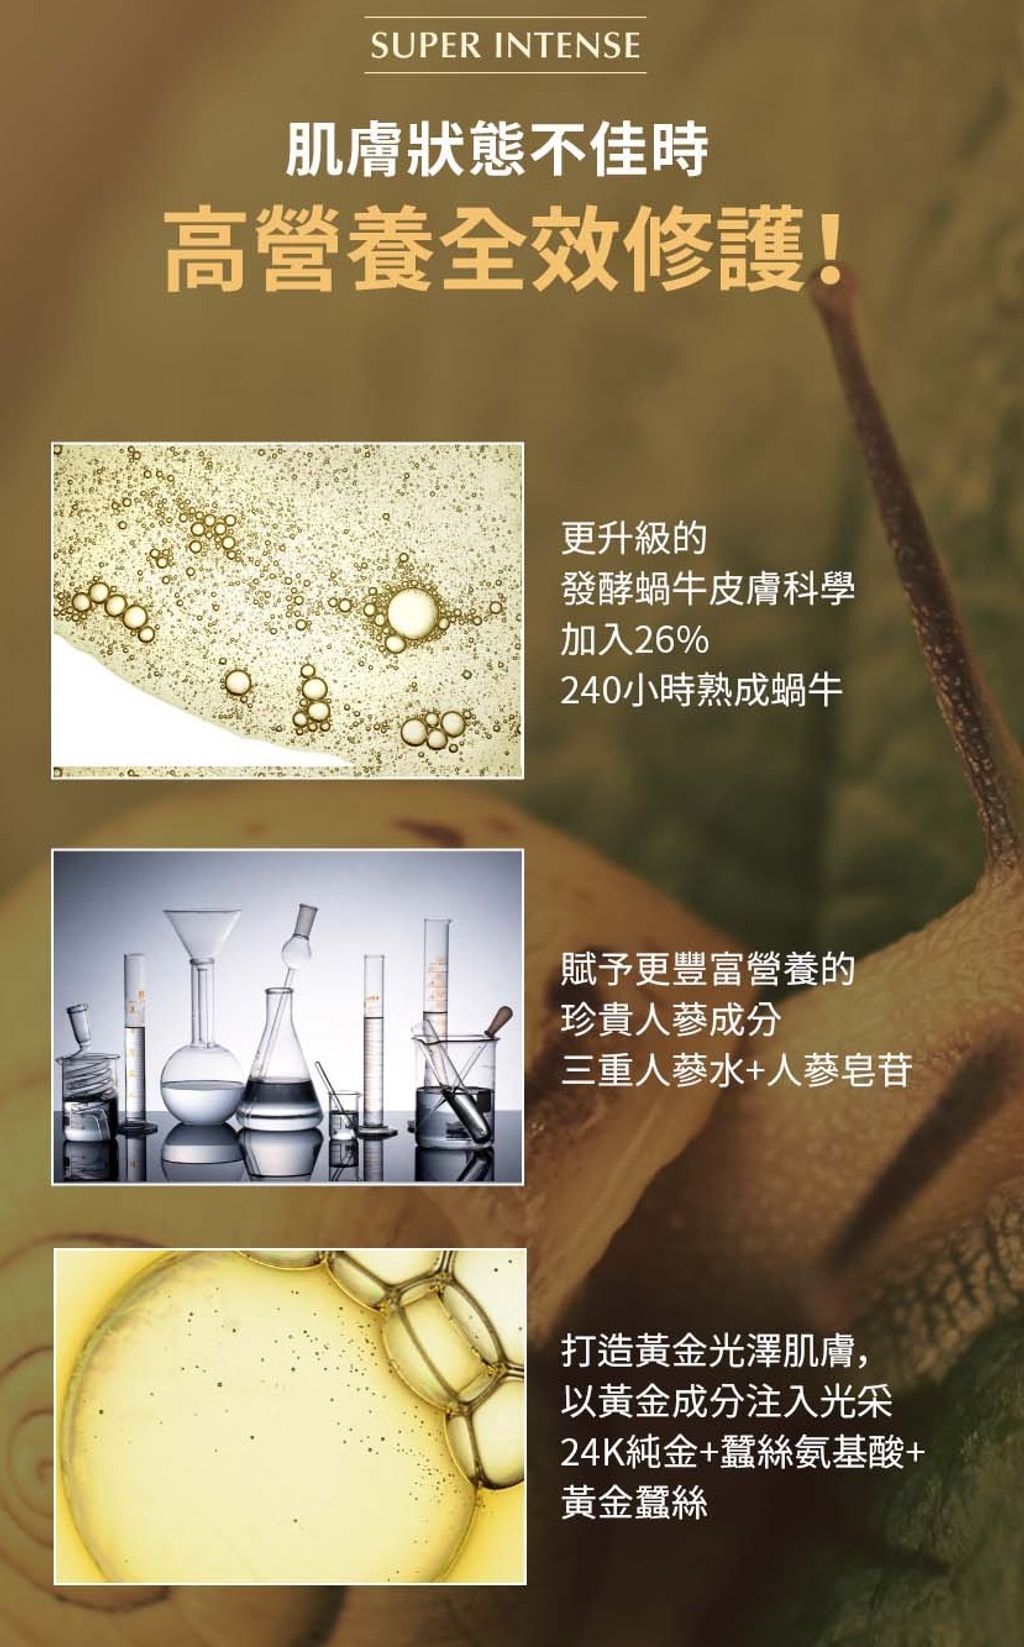 SUPER INTENSE Gold 24K Ginseng Snail Emulsion_HK_4.jpg